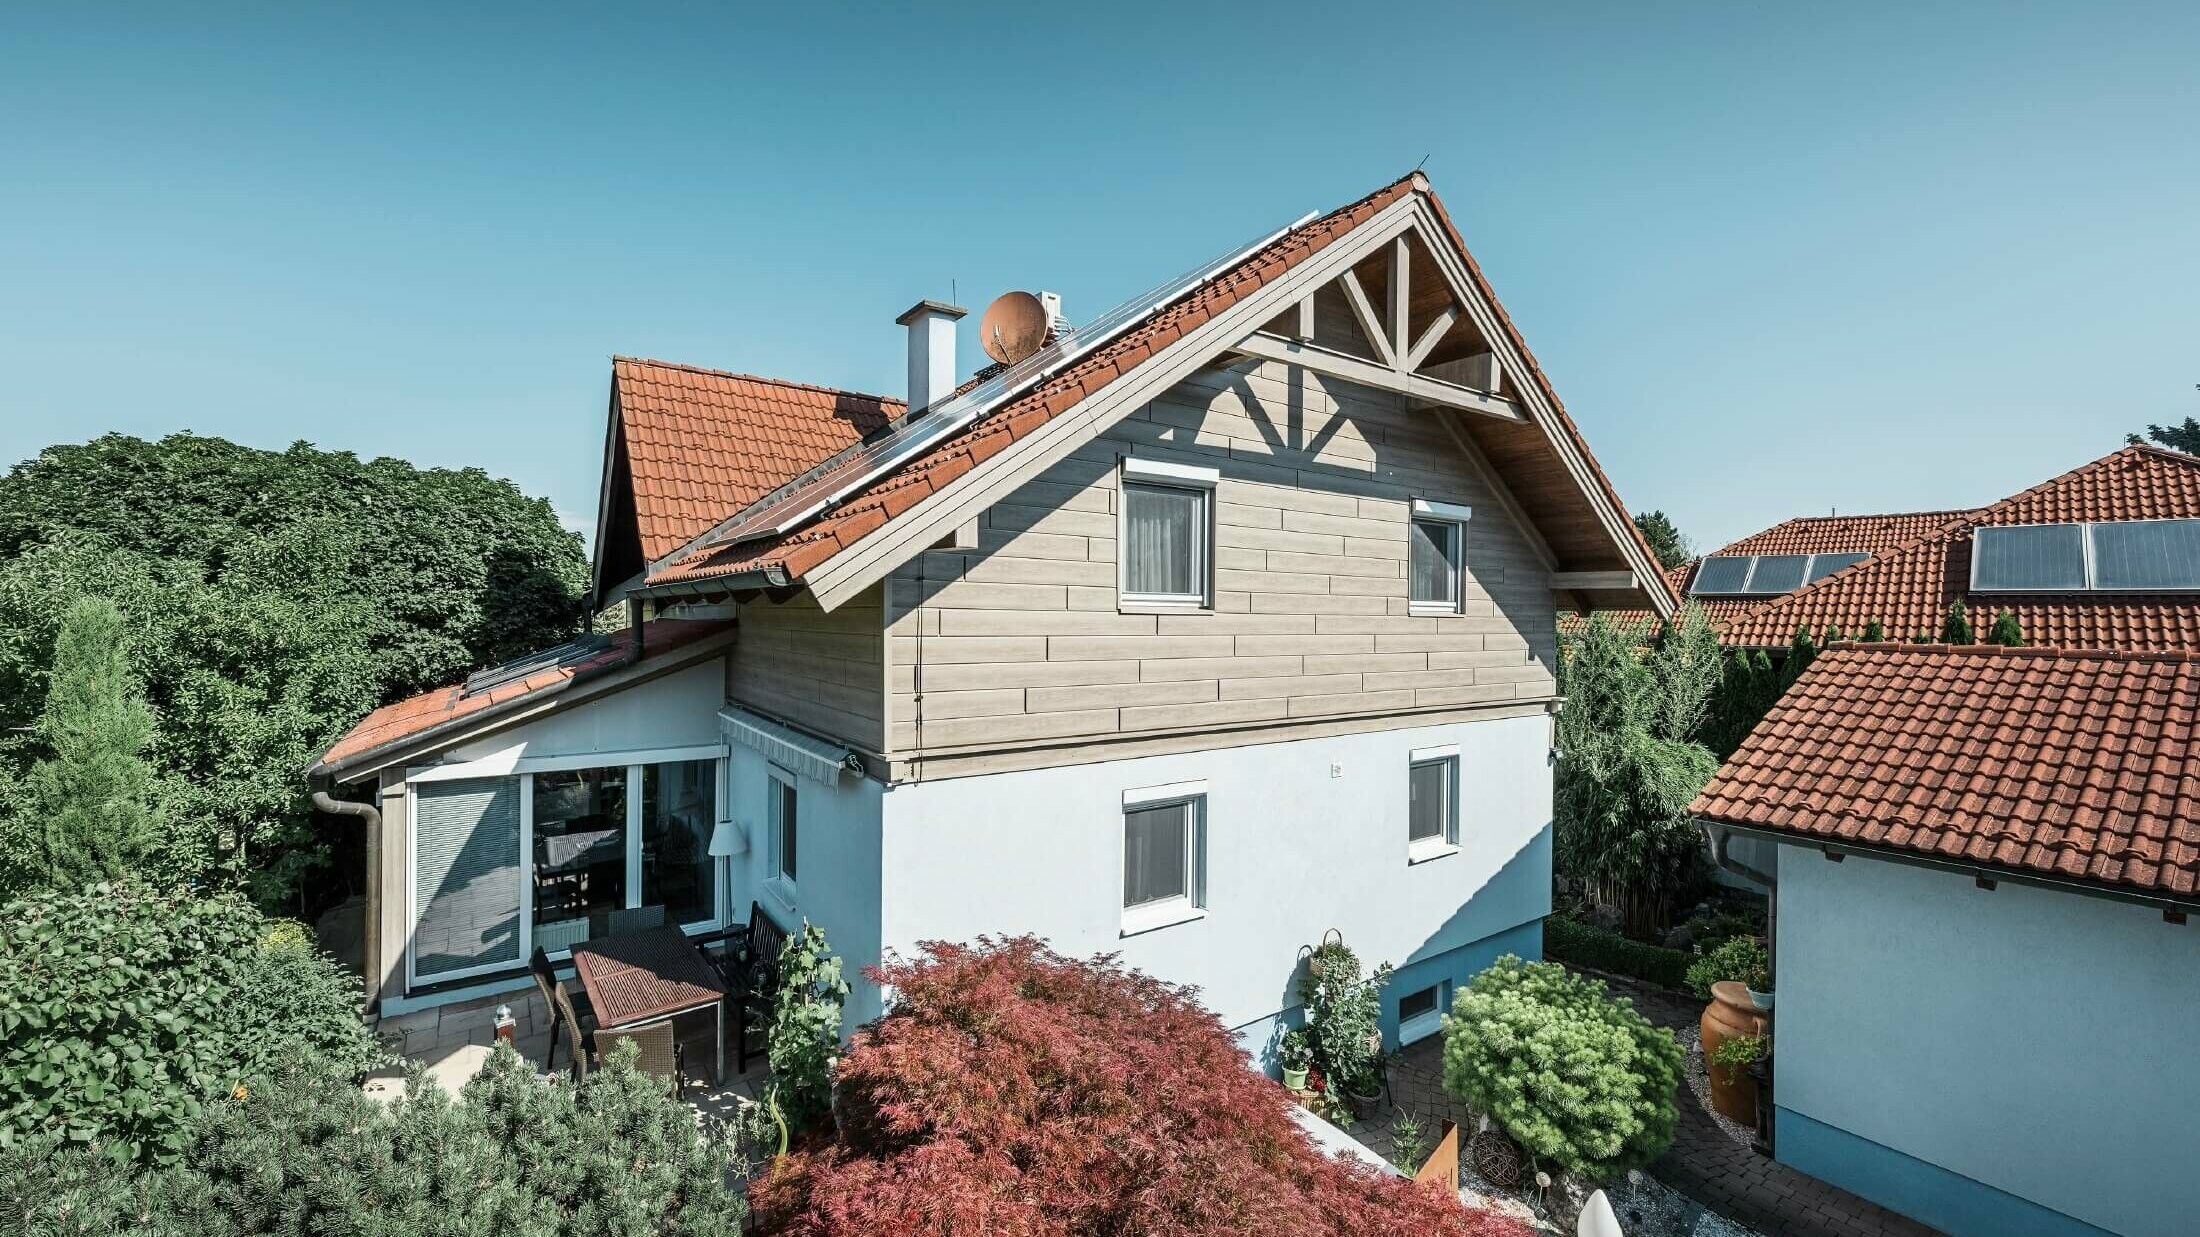 Façade d’une maison individuelle dont l’étage a été habillé avec des Sidings aspect bois de couleur chêne gris